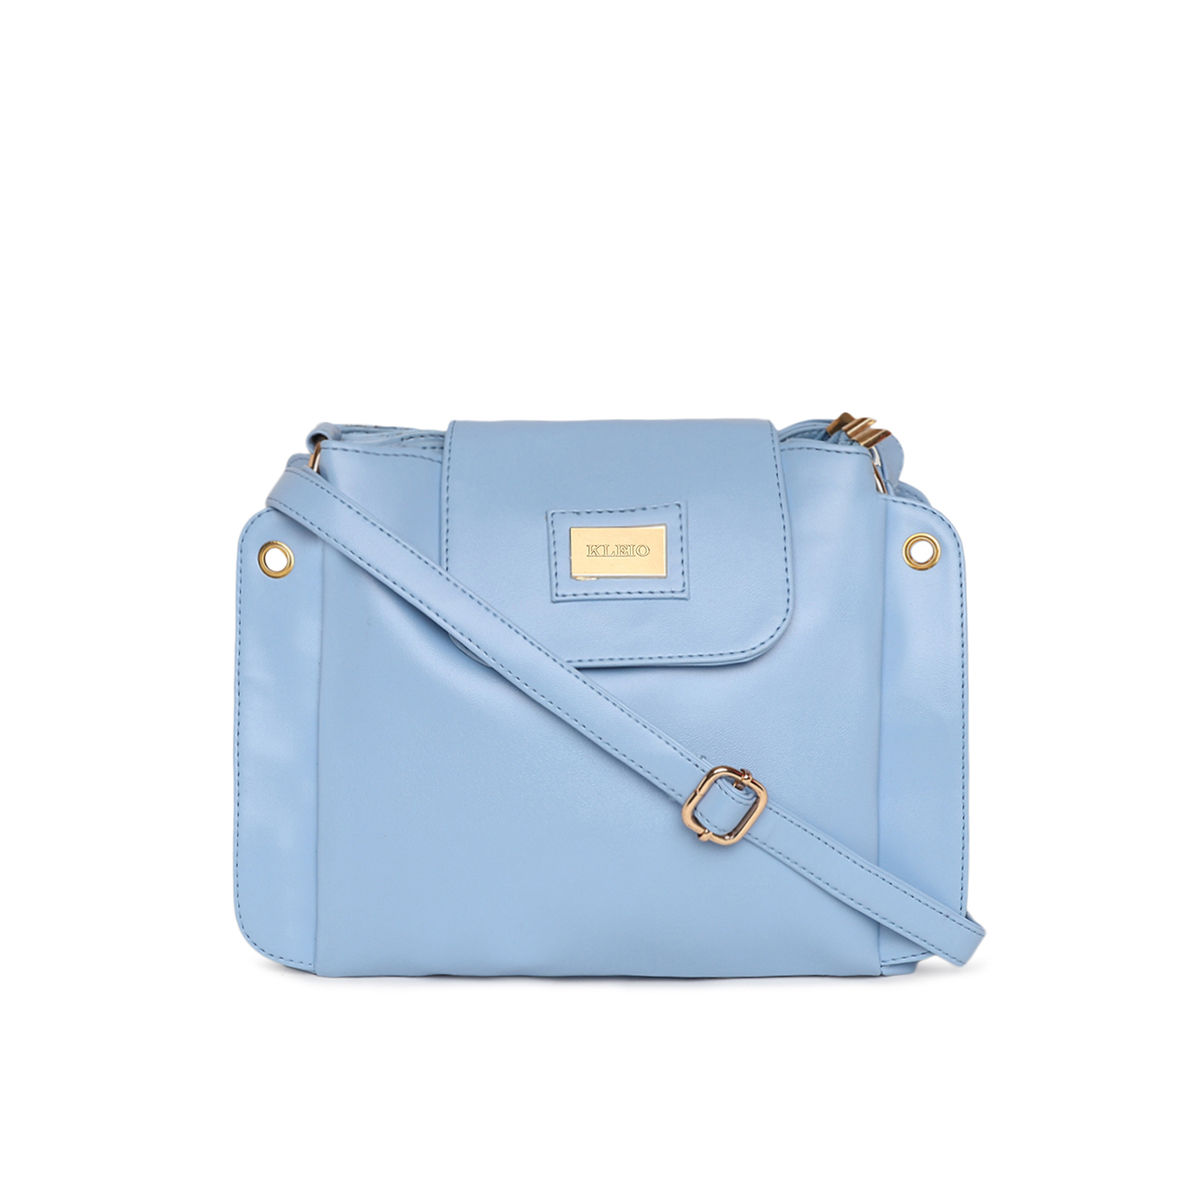 Buy/Send Elegant Grey Sling Bag Online- FNP